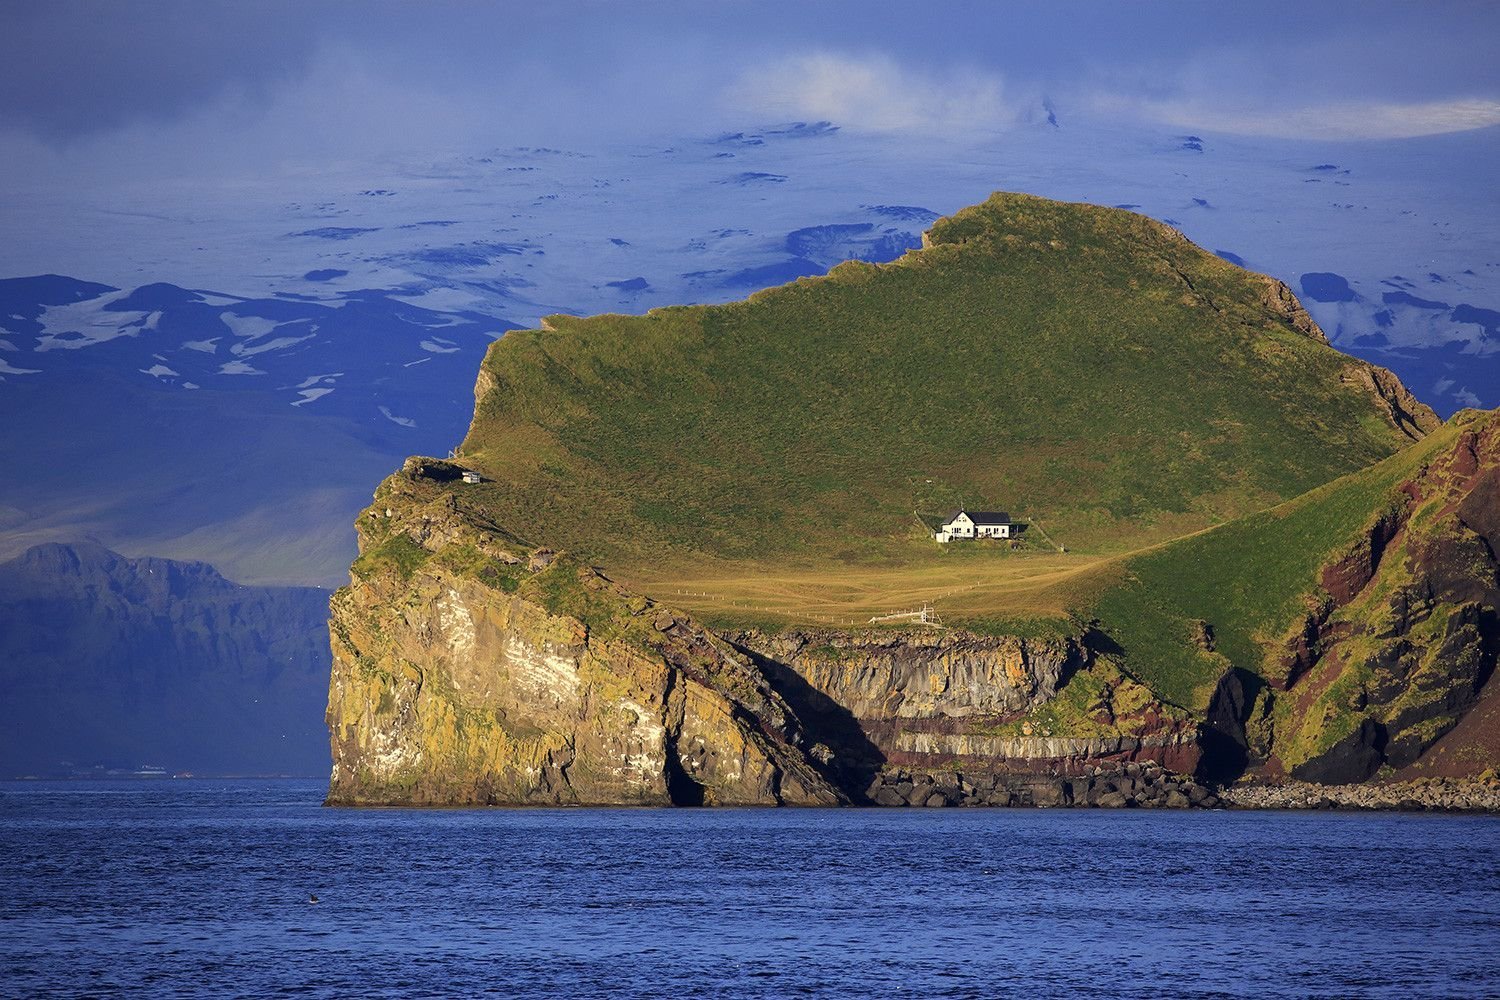 Остров Эллидаэй Исландия. Остров Эдлидаэй в Исландии. Одинокий дом на острове Эллидаэй Исландия. Остров Вестманнаэйяр Исландия.